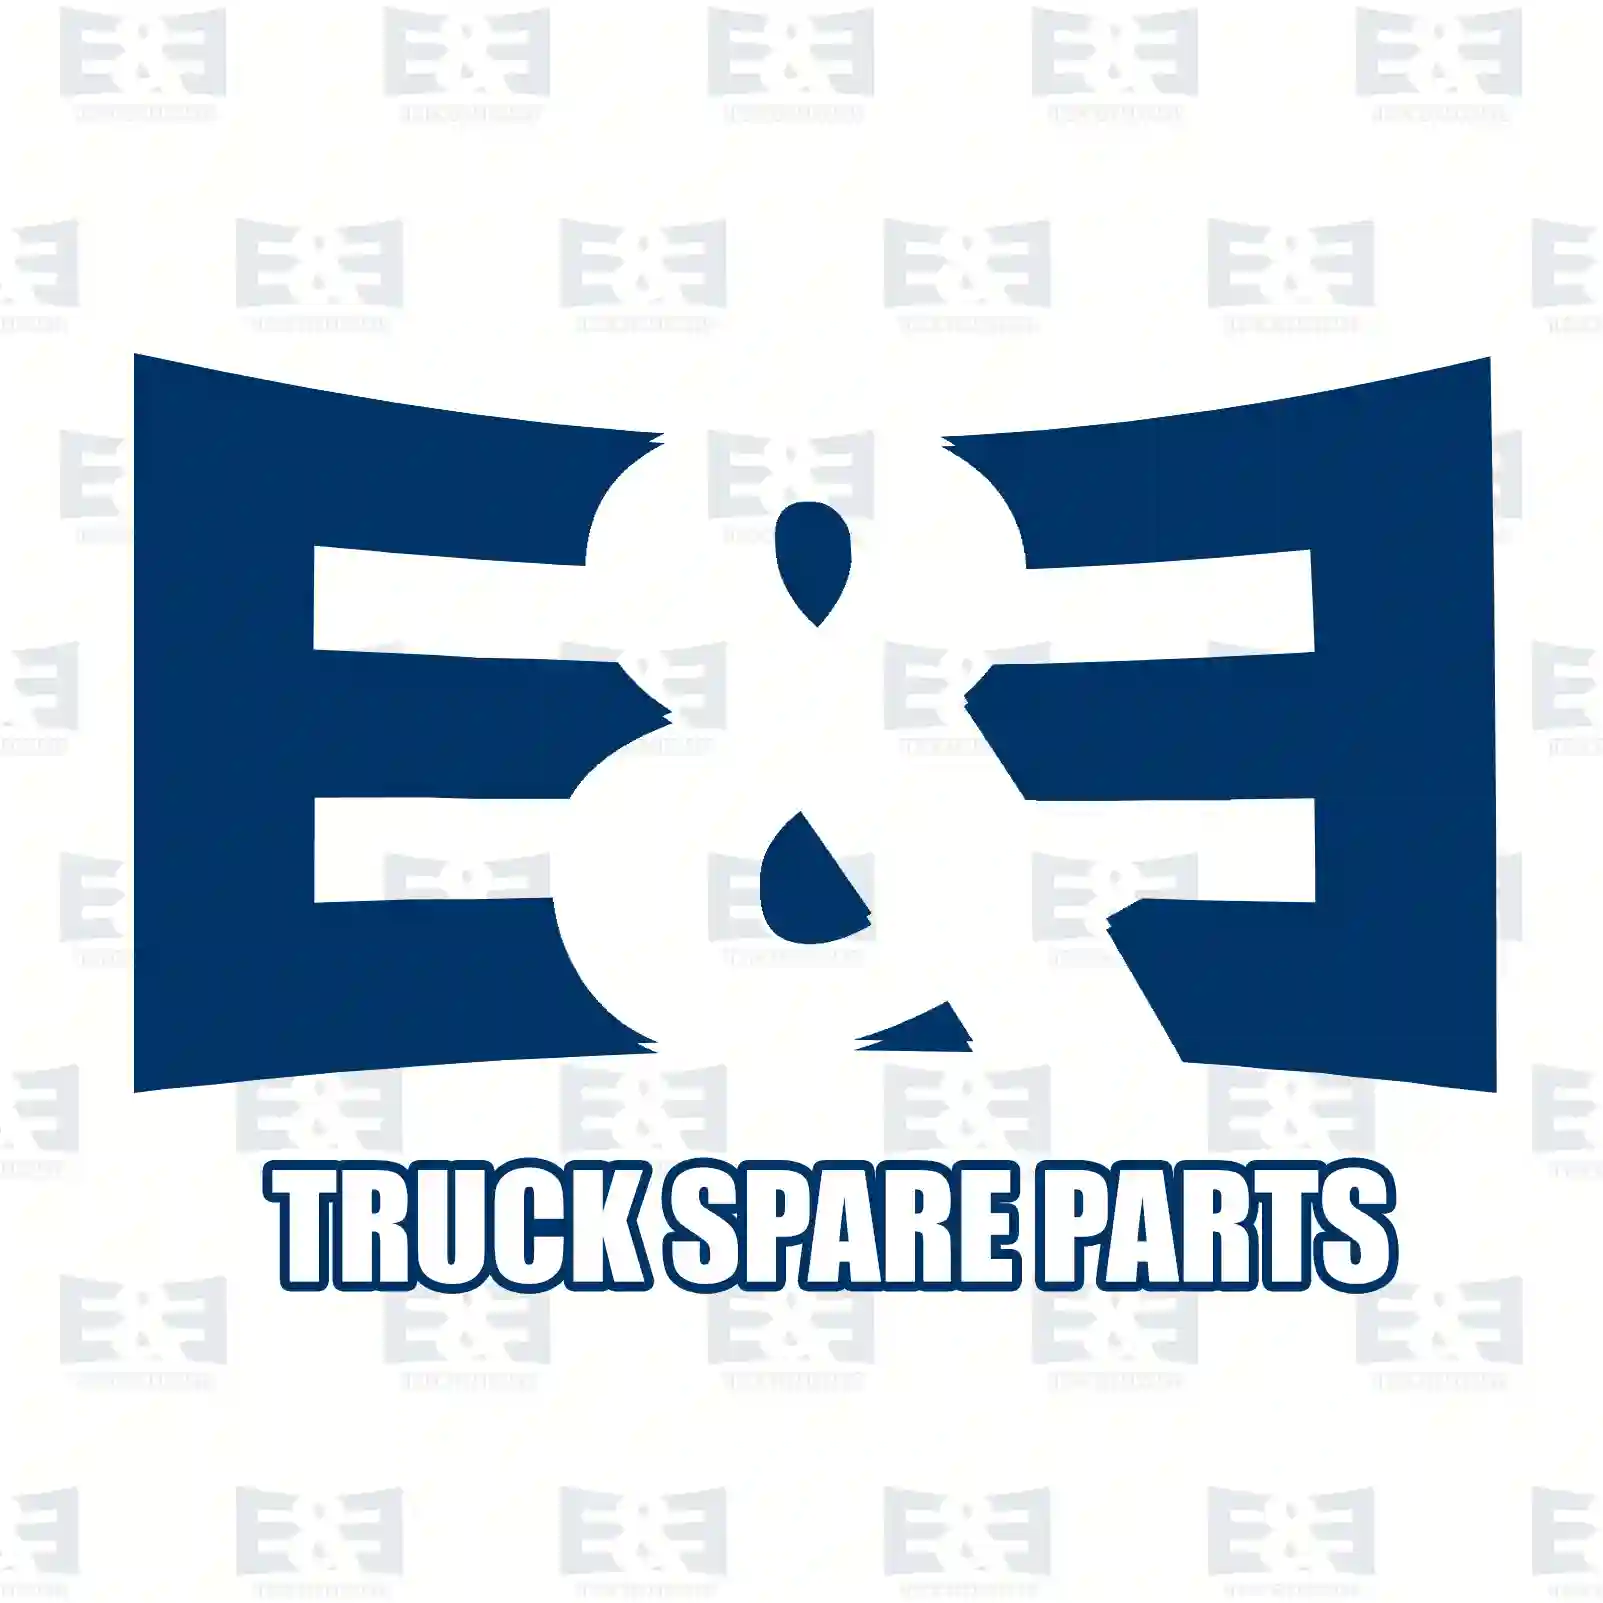 Engine mounting, rear, 2E2206727, 81962106065, 81962106071, 81962106072, ||  2E2206727 E&E Truck Spare Parts | Truck Spare Parts, Auotomotive Spare Parts Engine mounting, rear, 2E2206727, 81962106065, 81962106071, 81962106072, ||  2E2206727 E&E Truck Spare Parts | Truck Spare Parts, Auotomotive Spare Parts